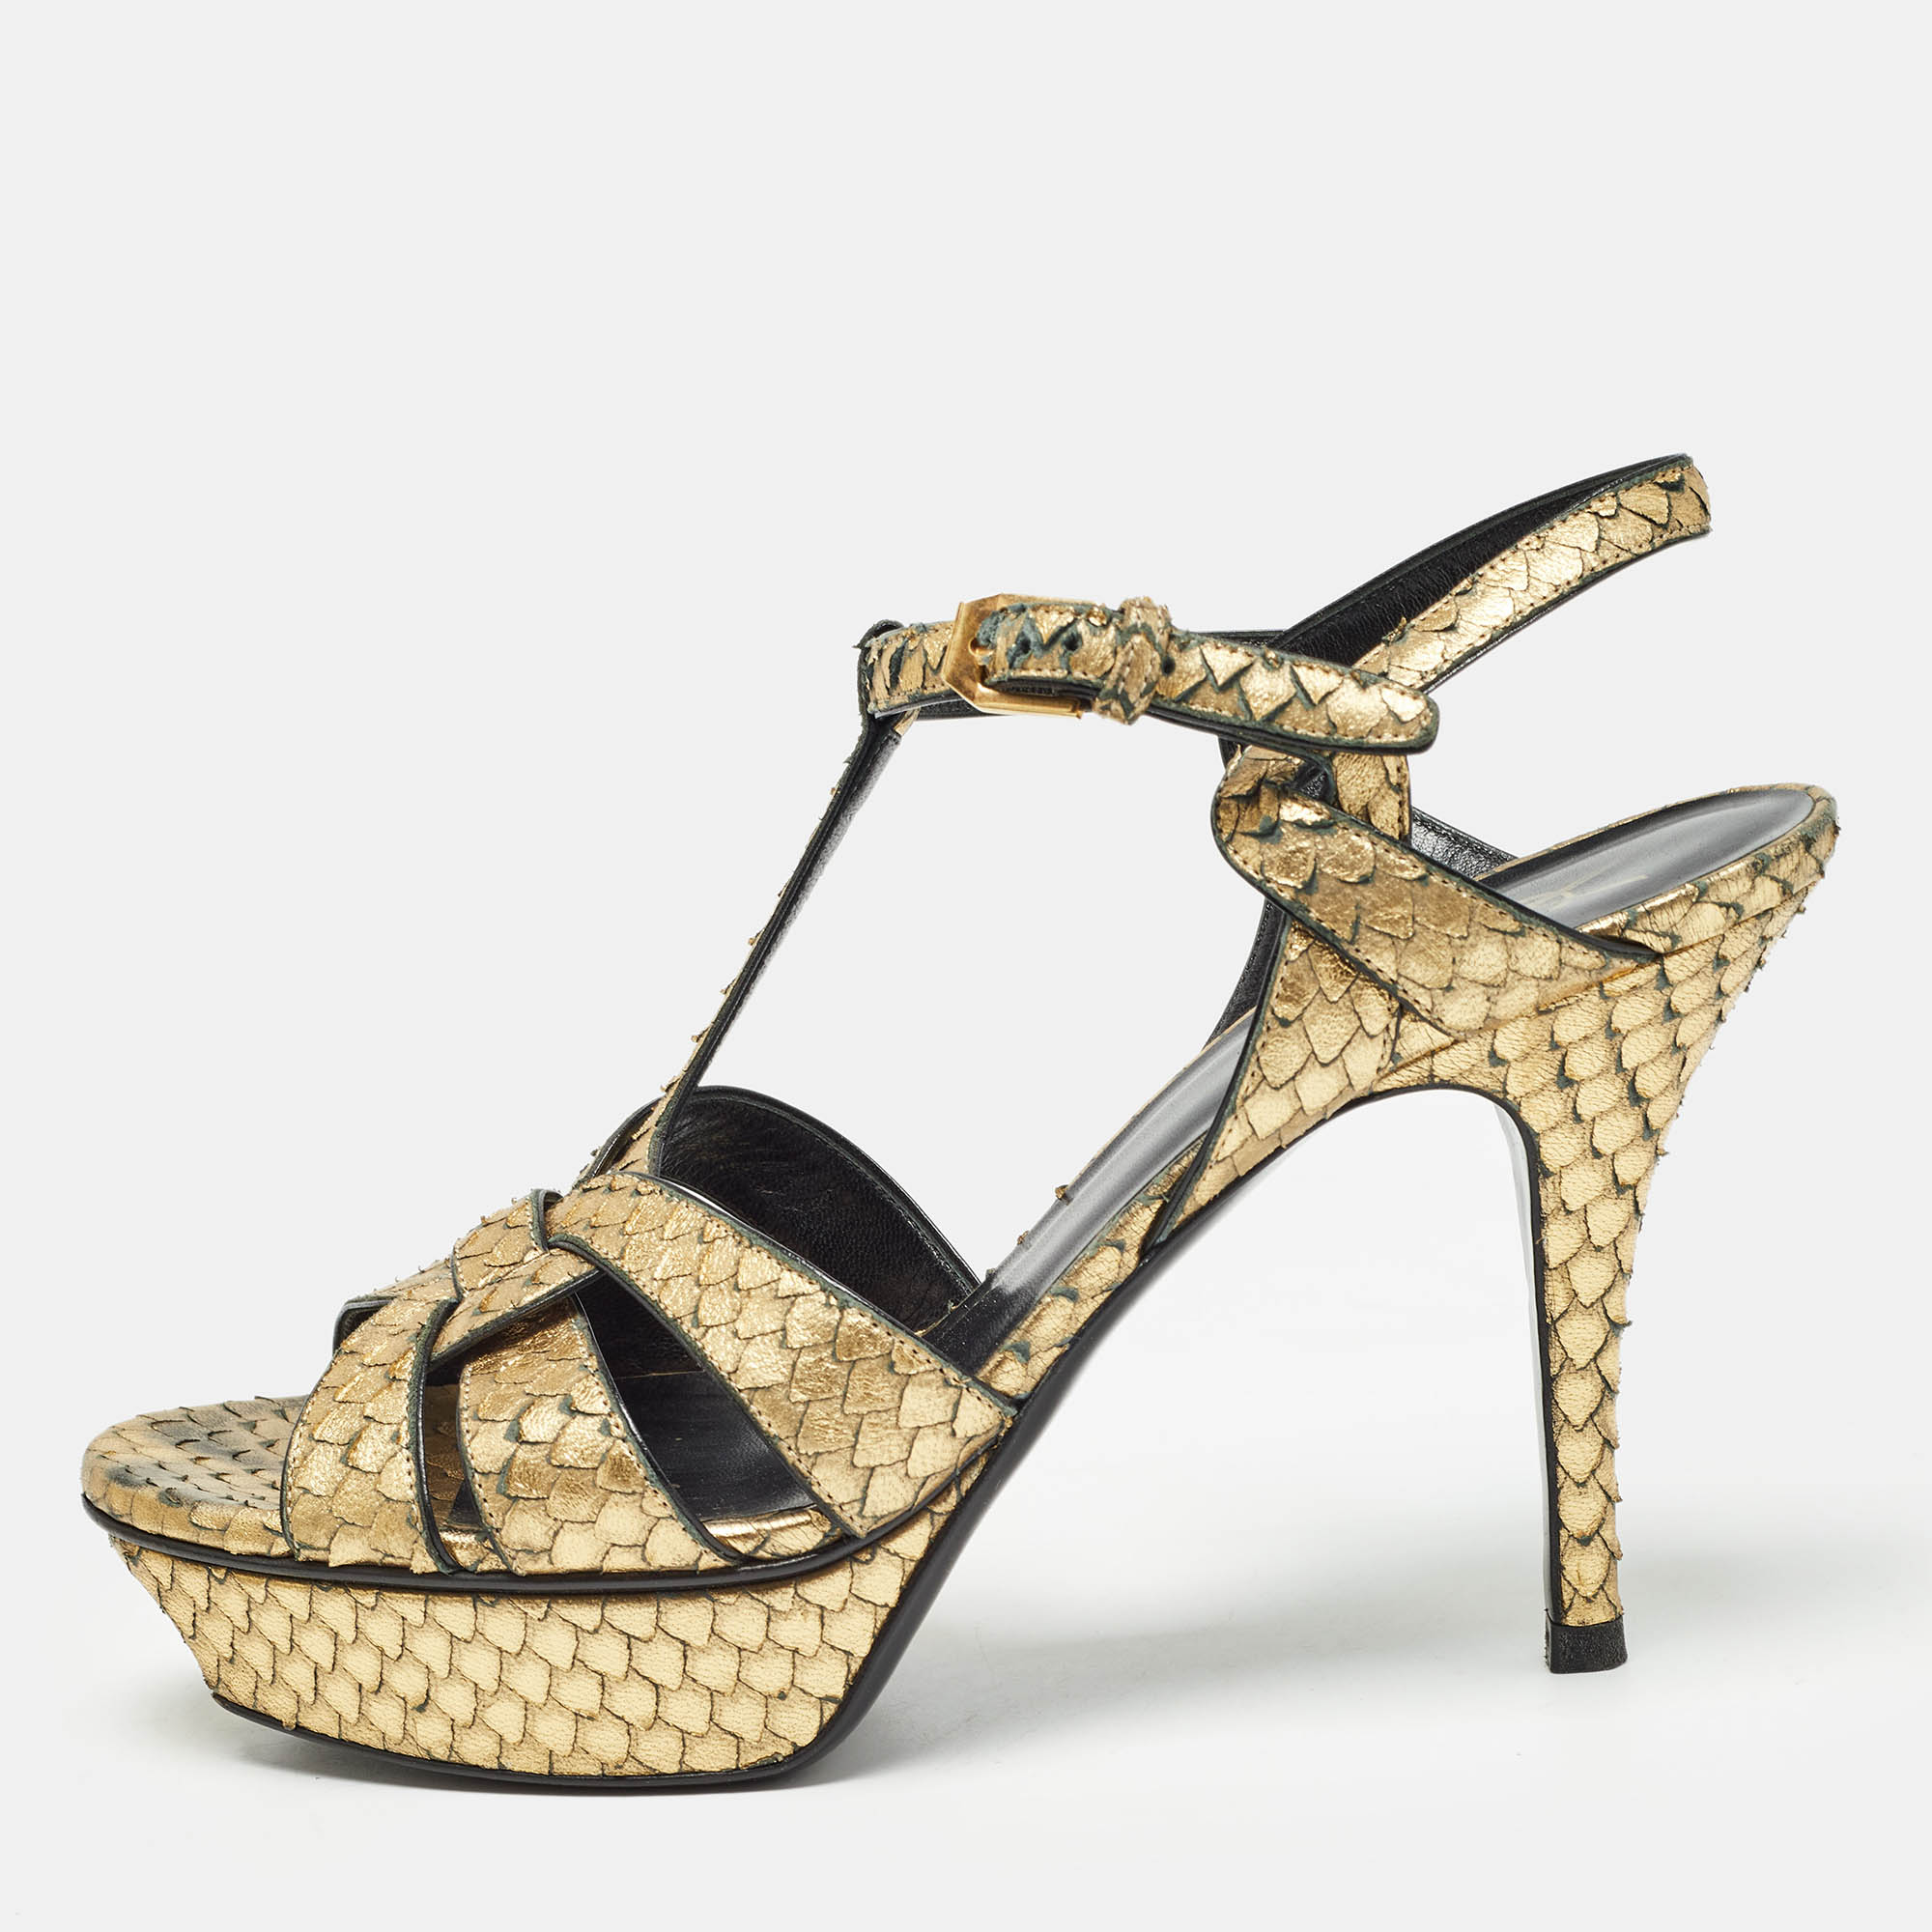 Saint laurent paris saint laurent metallic gold python embossed leather tribute sandals size 40